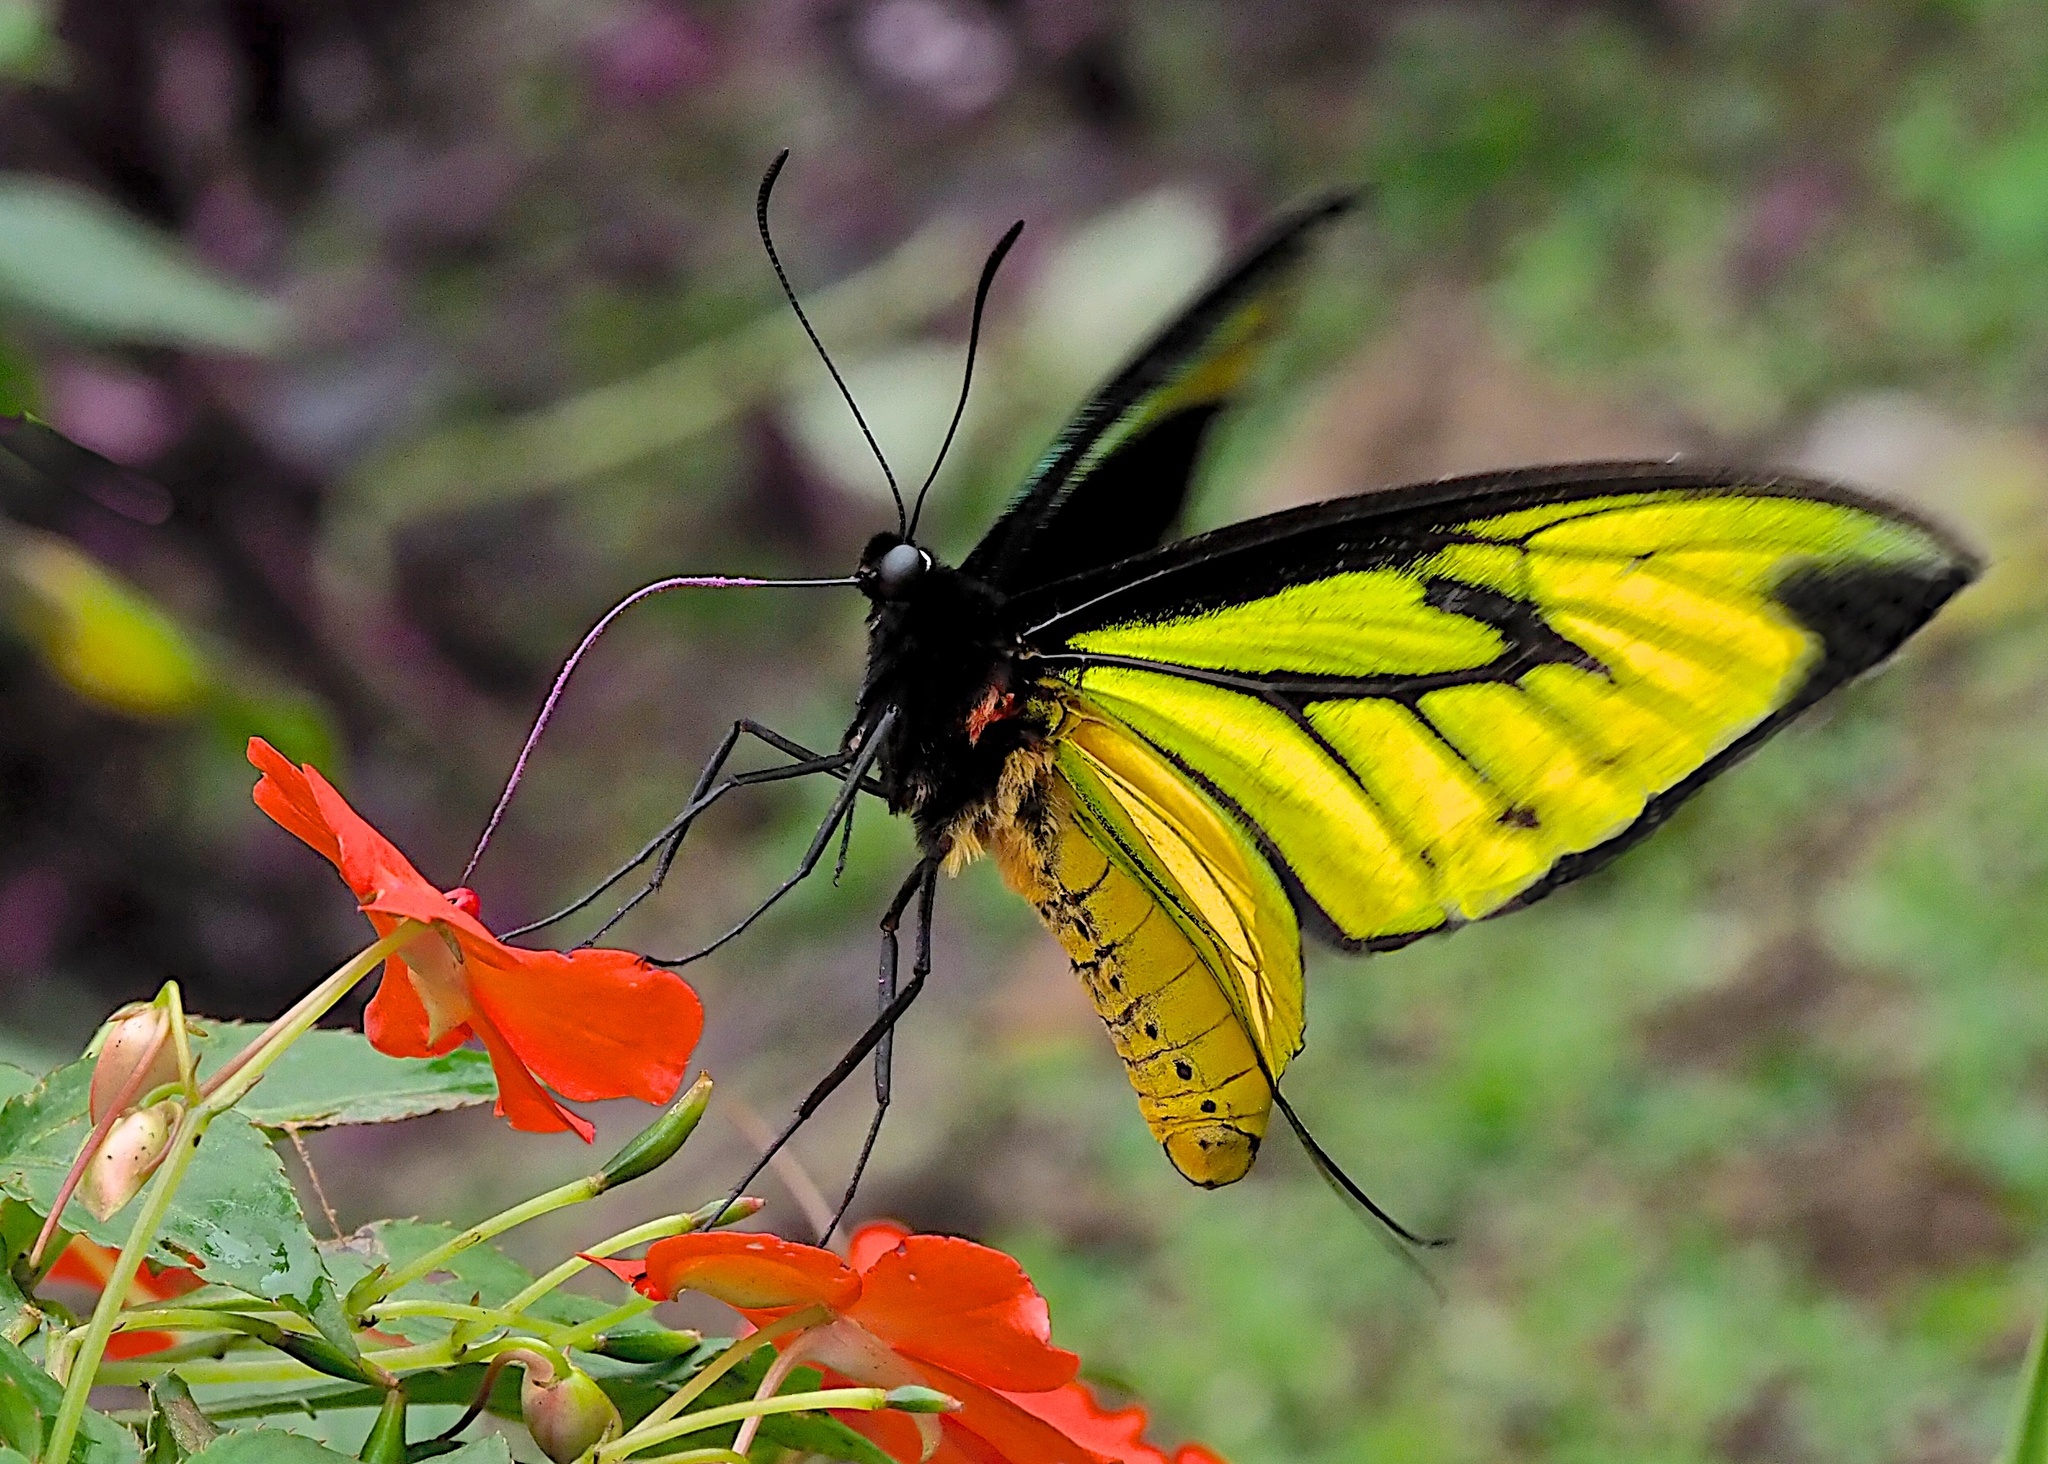 Las mariposas alas de pájaro del género Ornithoptera